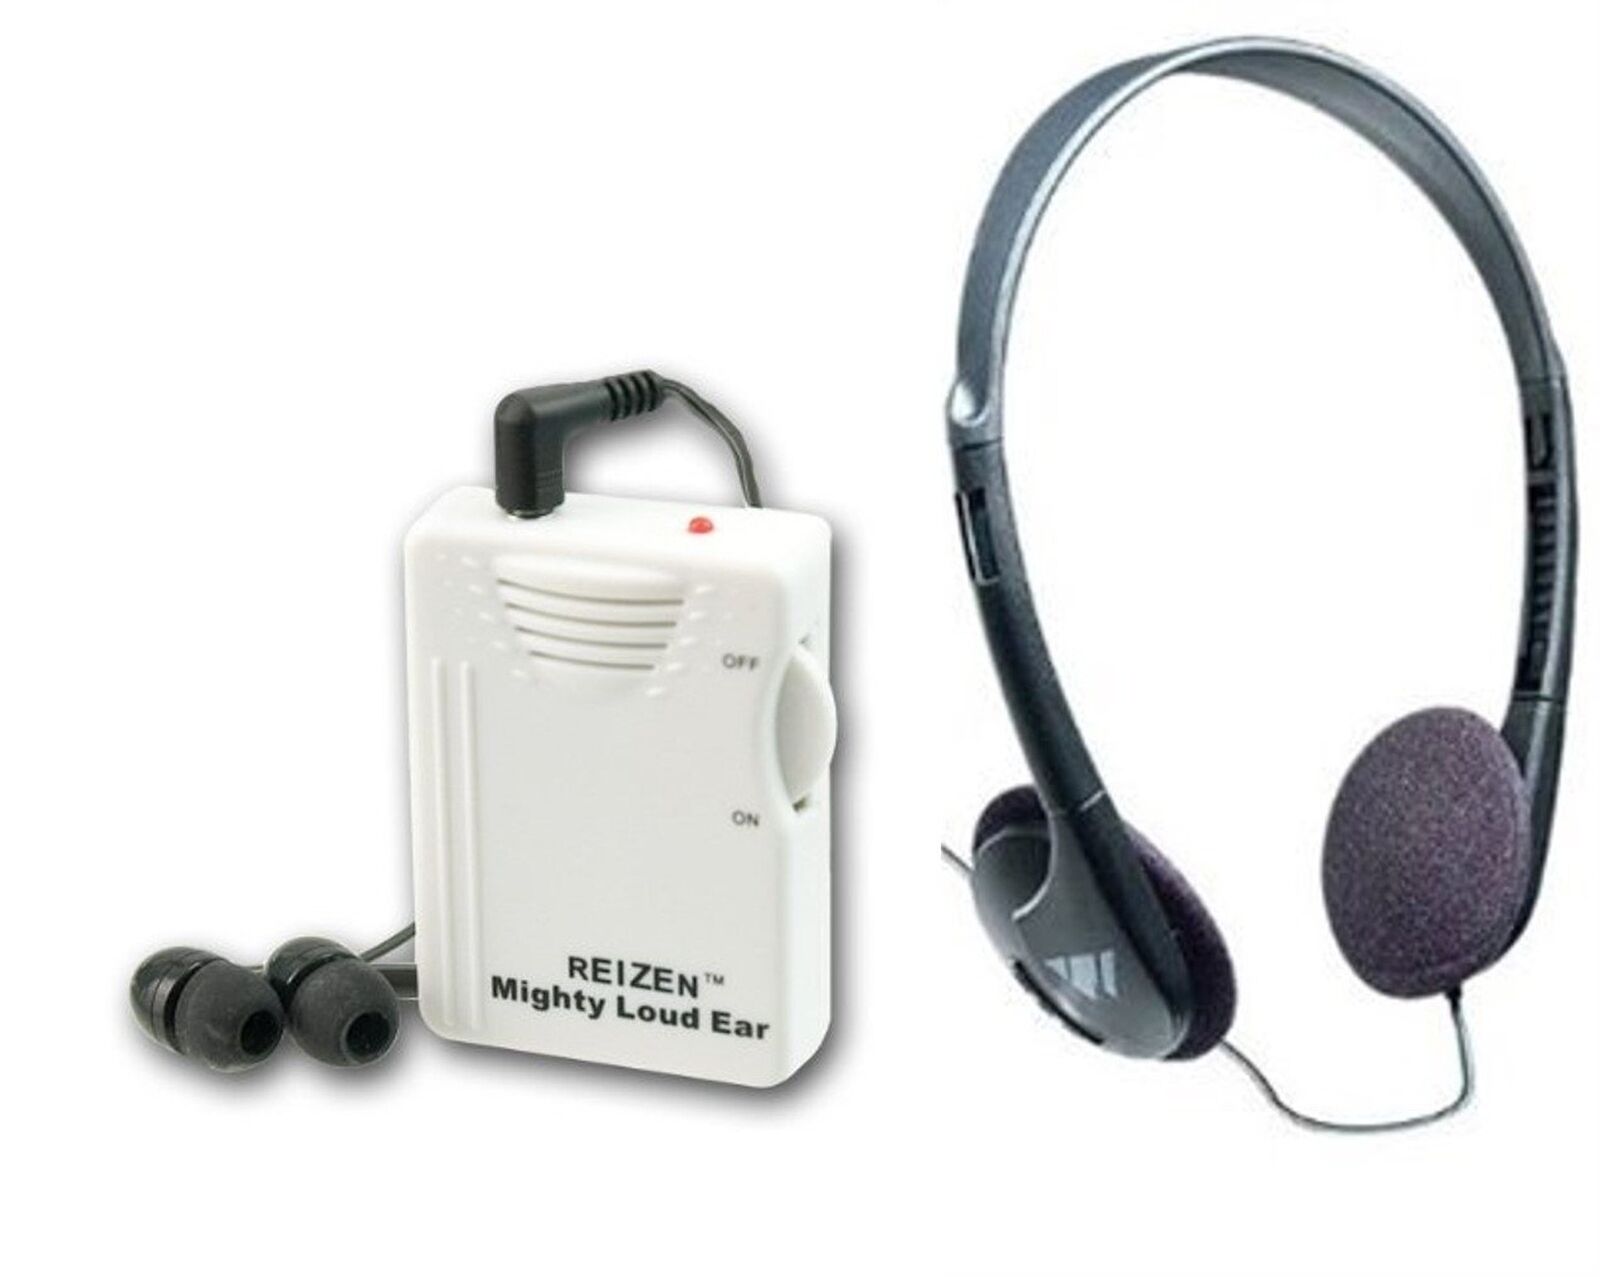 Reizen Mighty Loud Ear 120dB Personal Sound Hearing Amplifier with Earphones ...